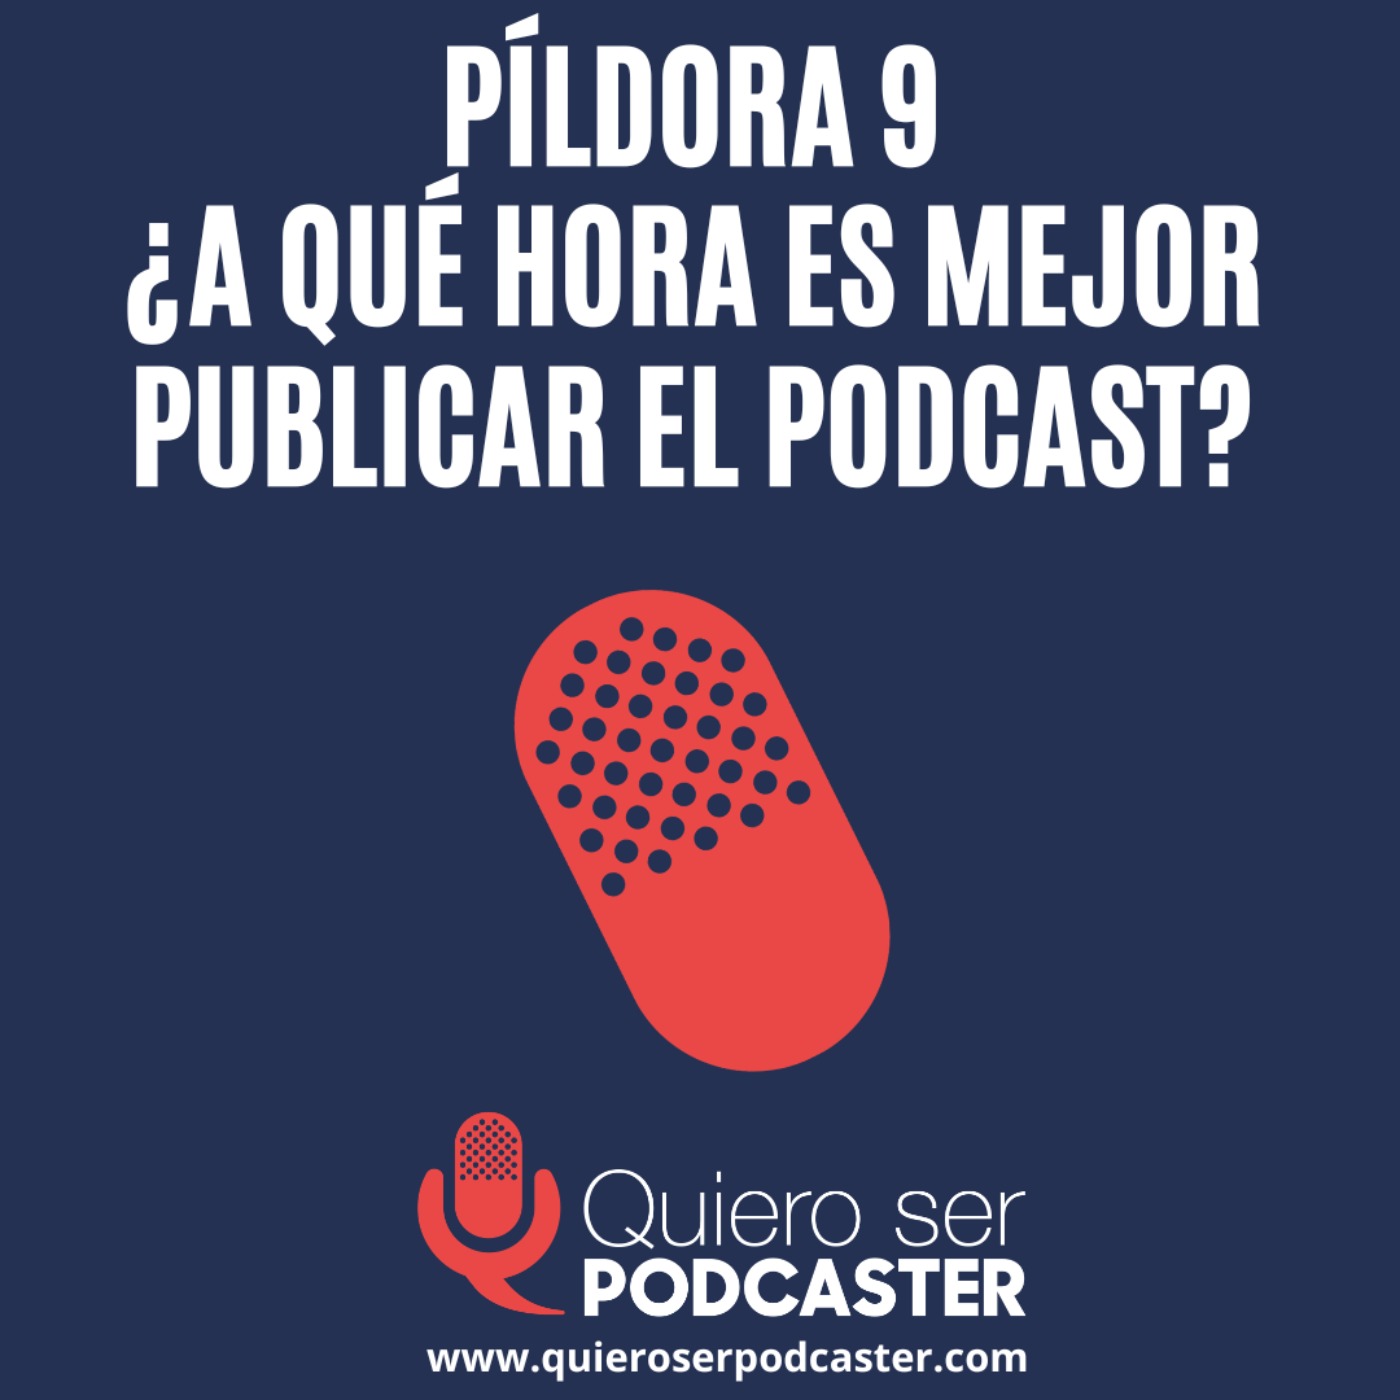 ¿A qué hora es mejor publicar el podcast? - Píldora 9